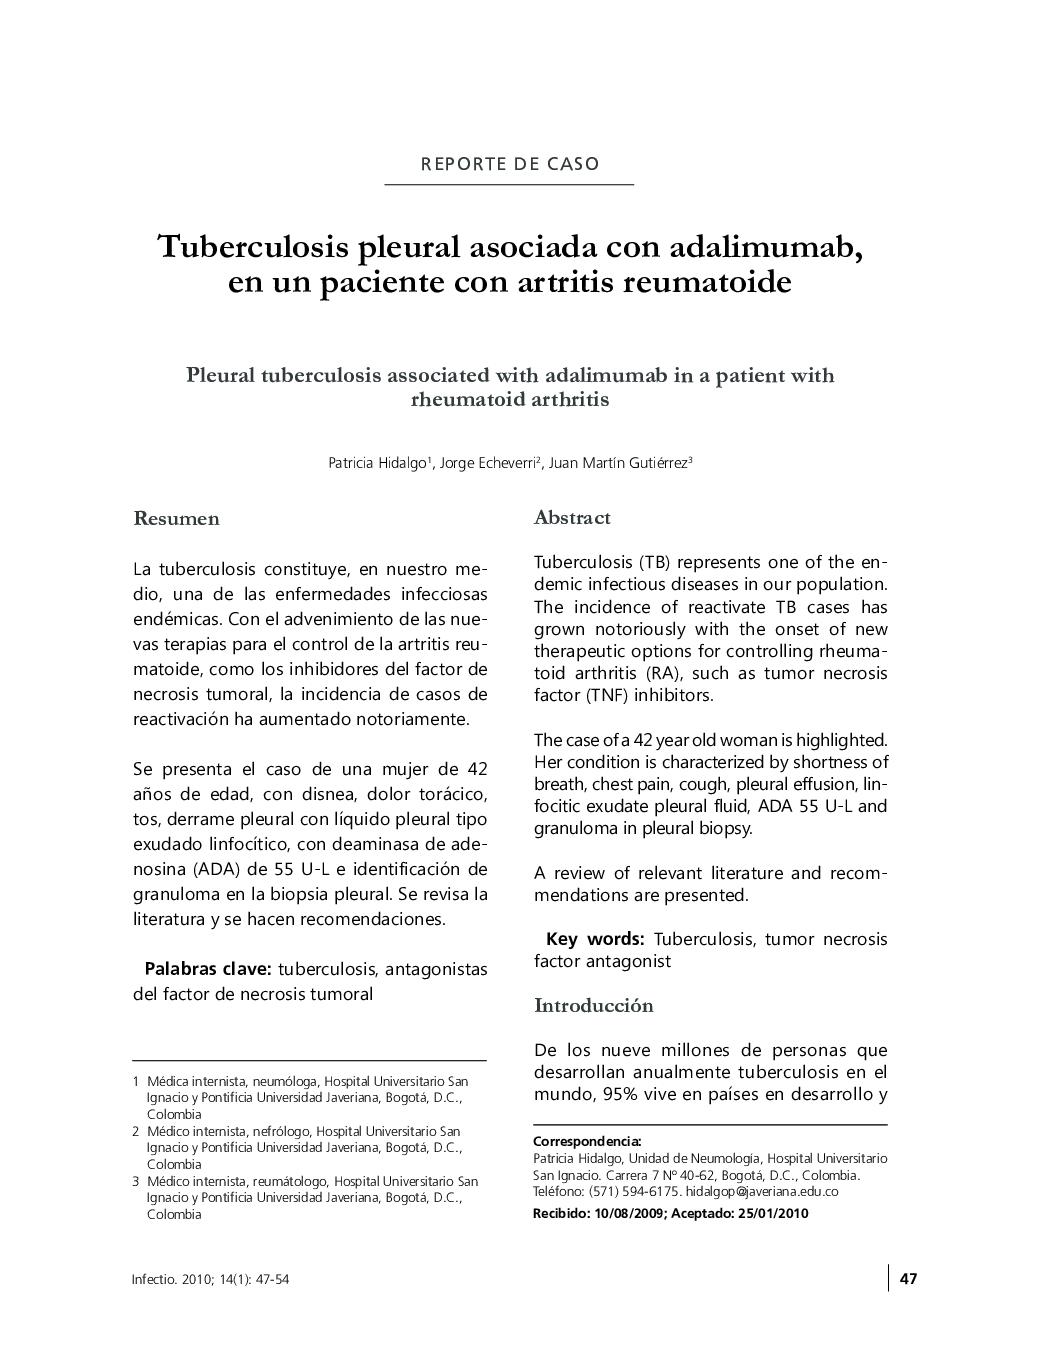 Tuberculosis pleural asociada con adalimumab, en un paciente con artritis reumatoide